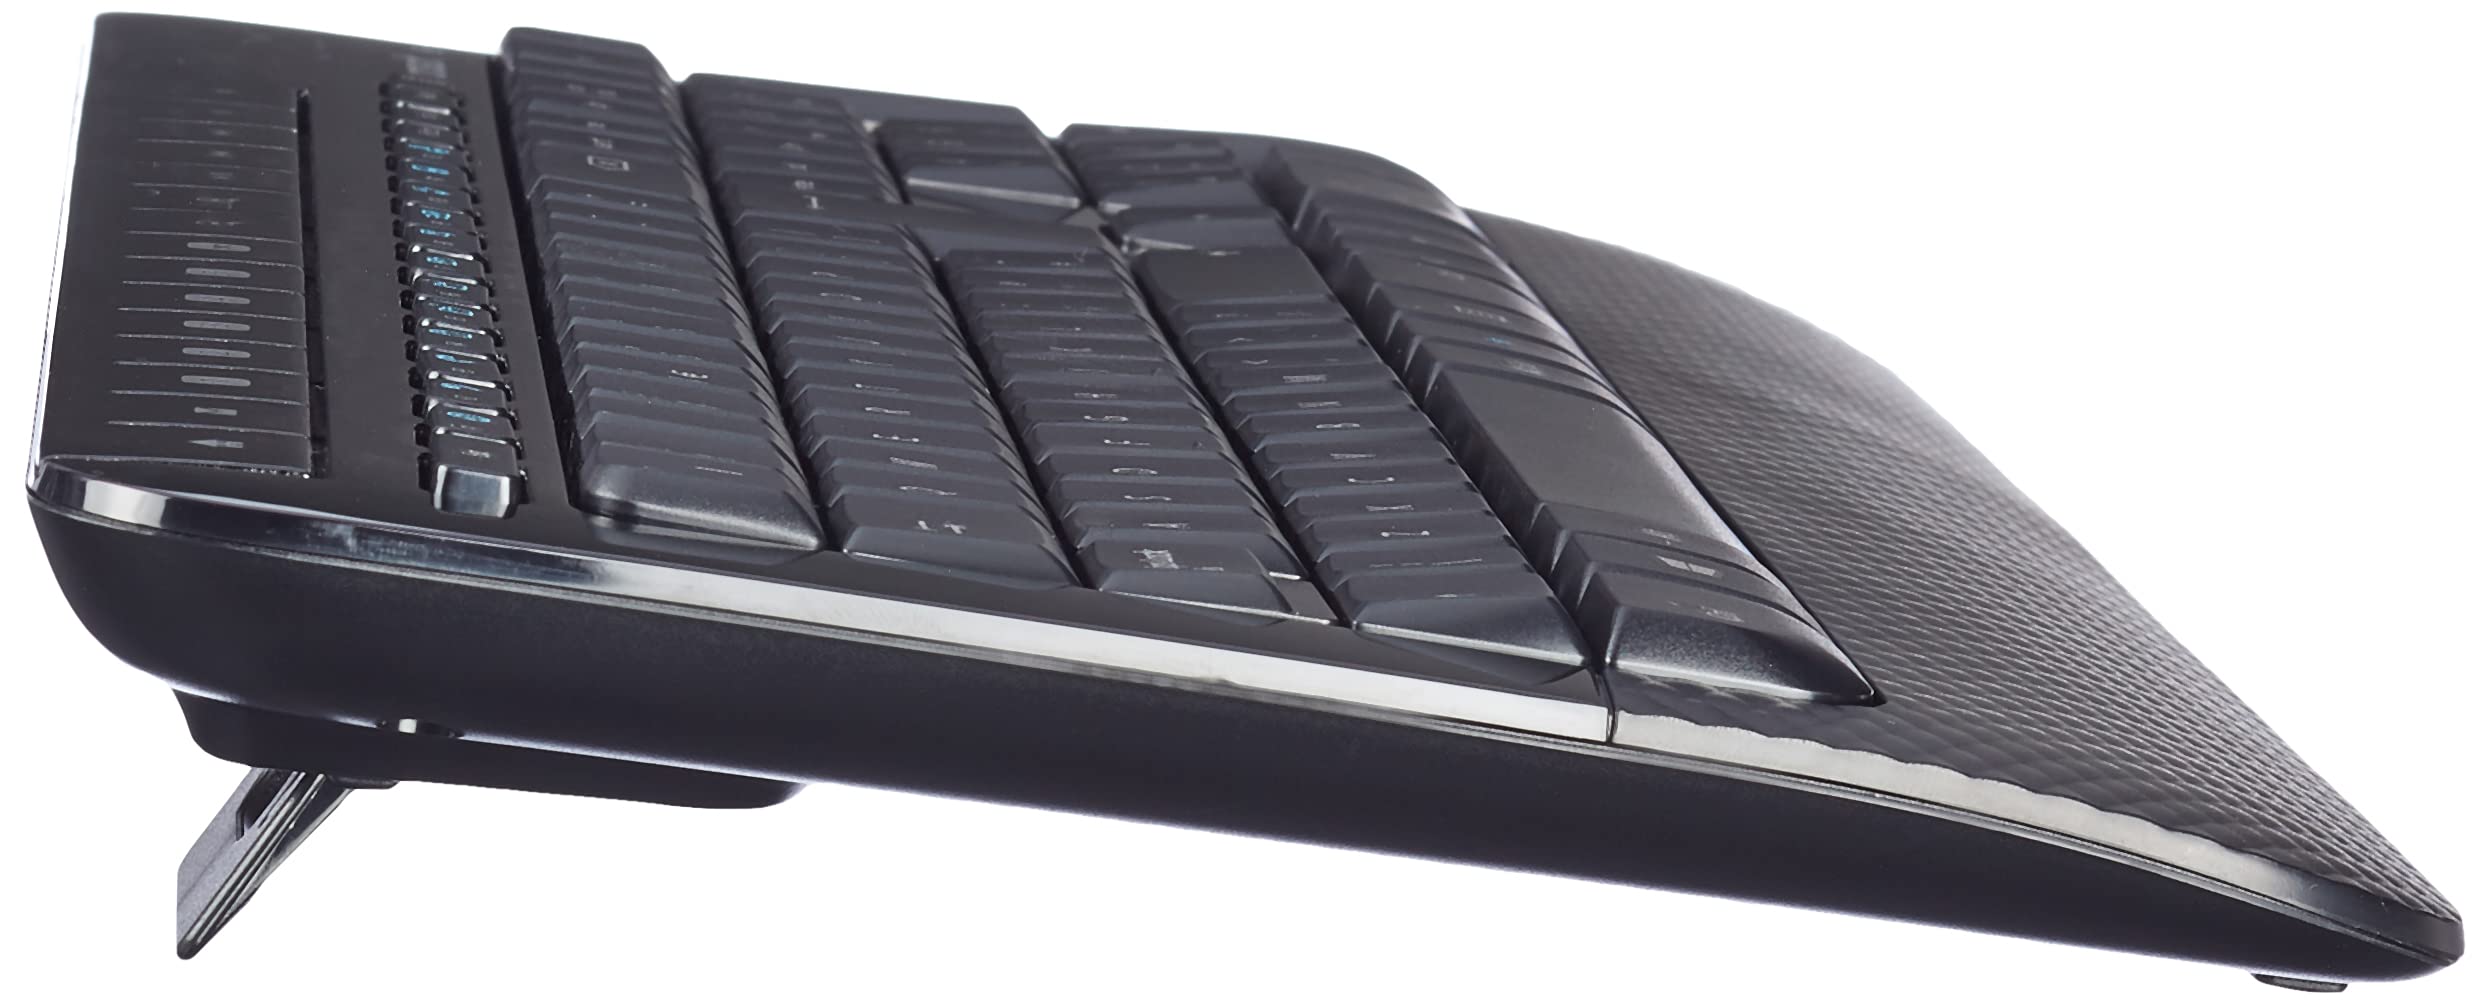 Microsoft Wireless Desktop 2000 Keyboard and Mouse Set, UK Layout - Black